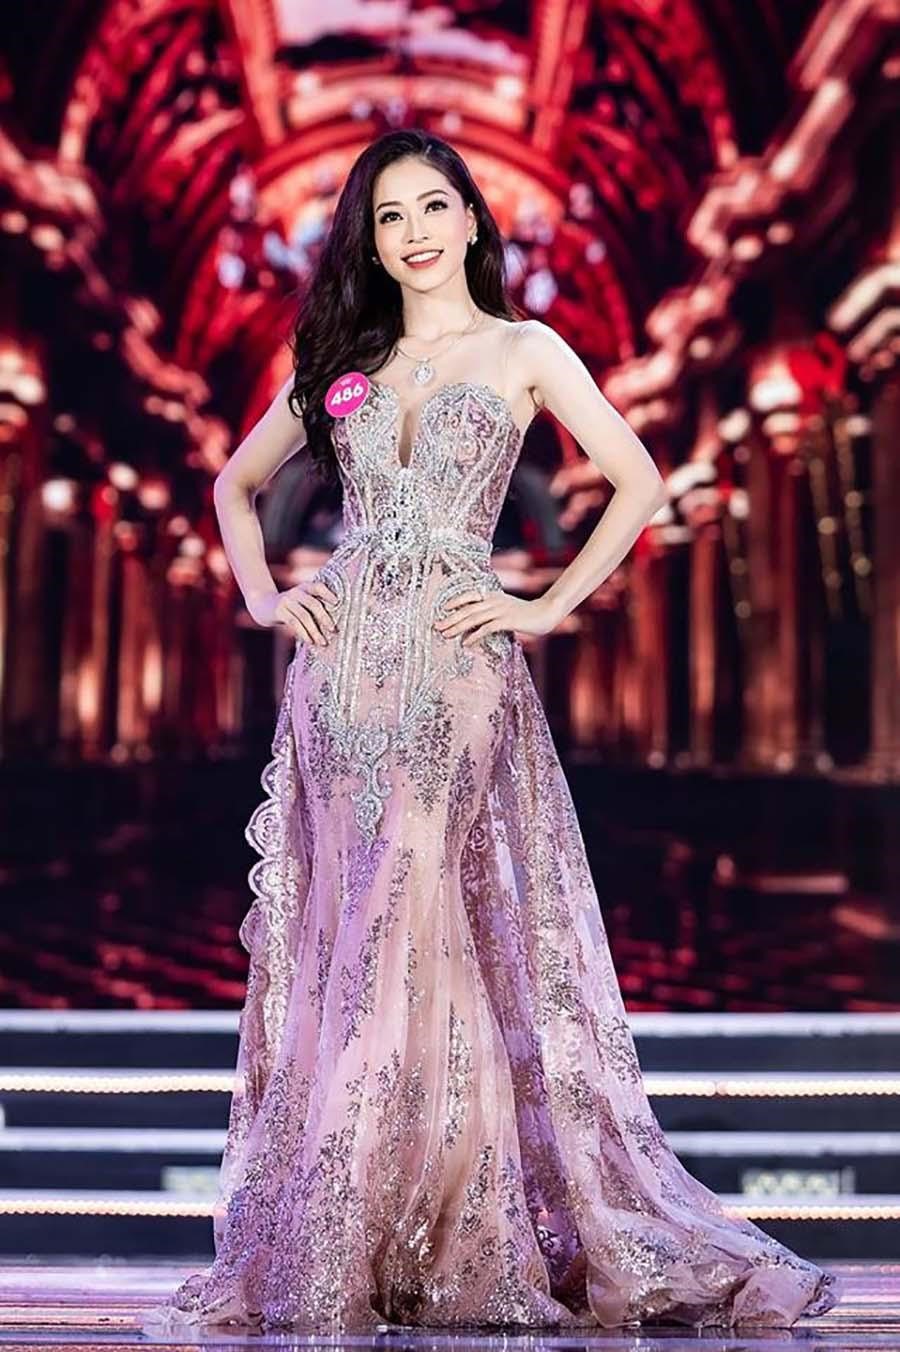 Bùi Phương Nga sinh năm 1998, là Á hậu 1 của cuộc thi Hoa hậu Việt Nam 2018. Sau khi tốt nghiệp Đại học Kinh tế Quốc dân, cô tiếp tục tham gia hoạt động nghệ thuật, làm MC, người mẫu.